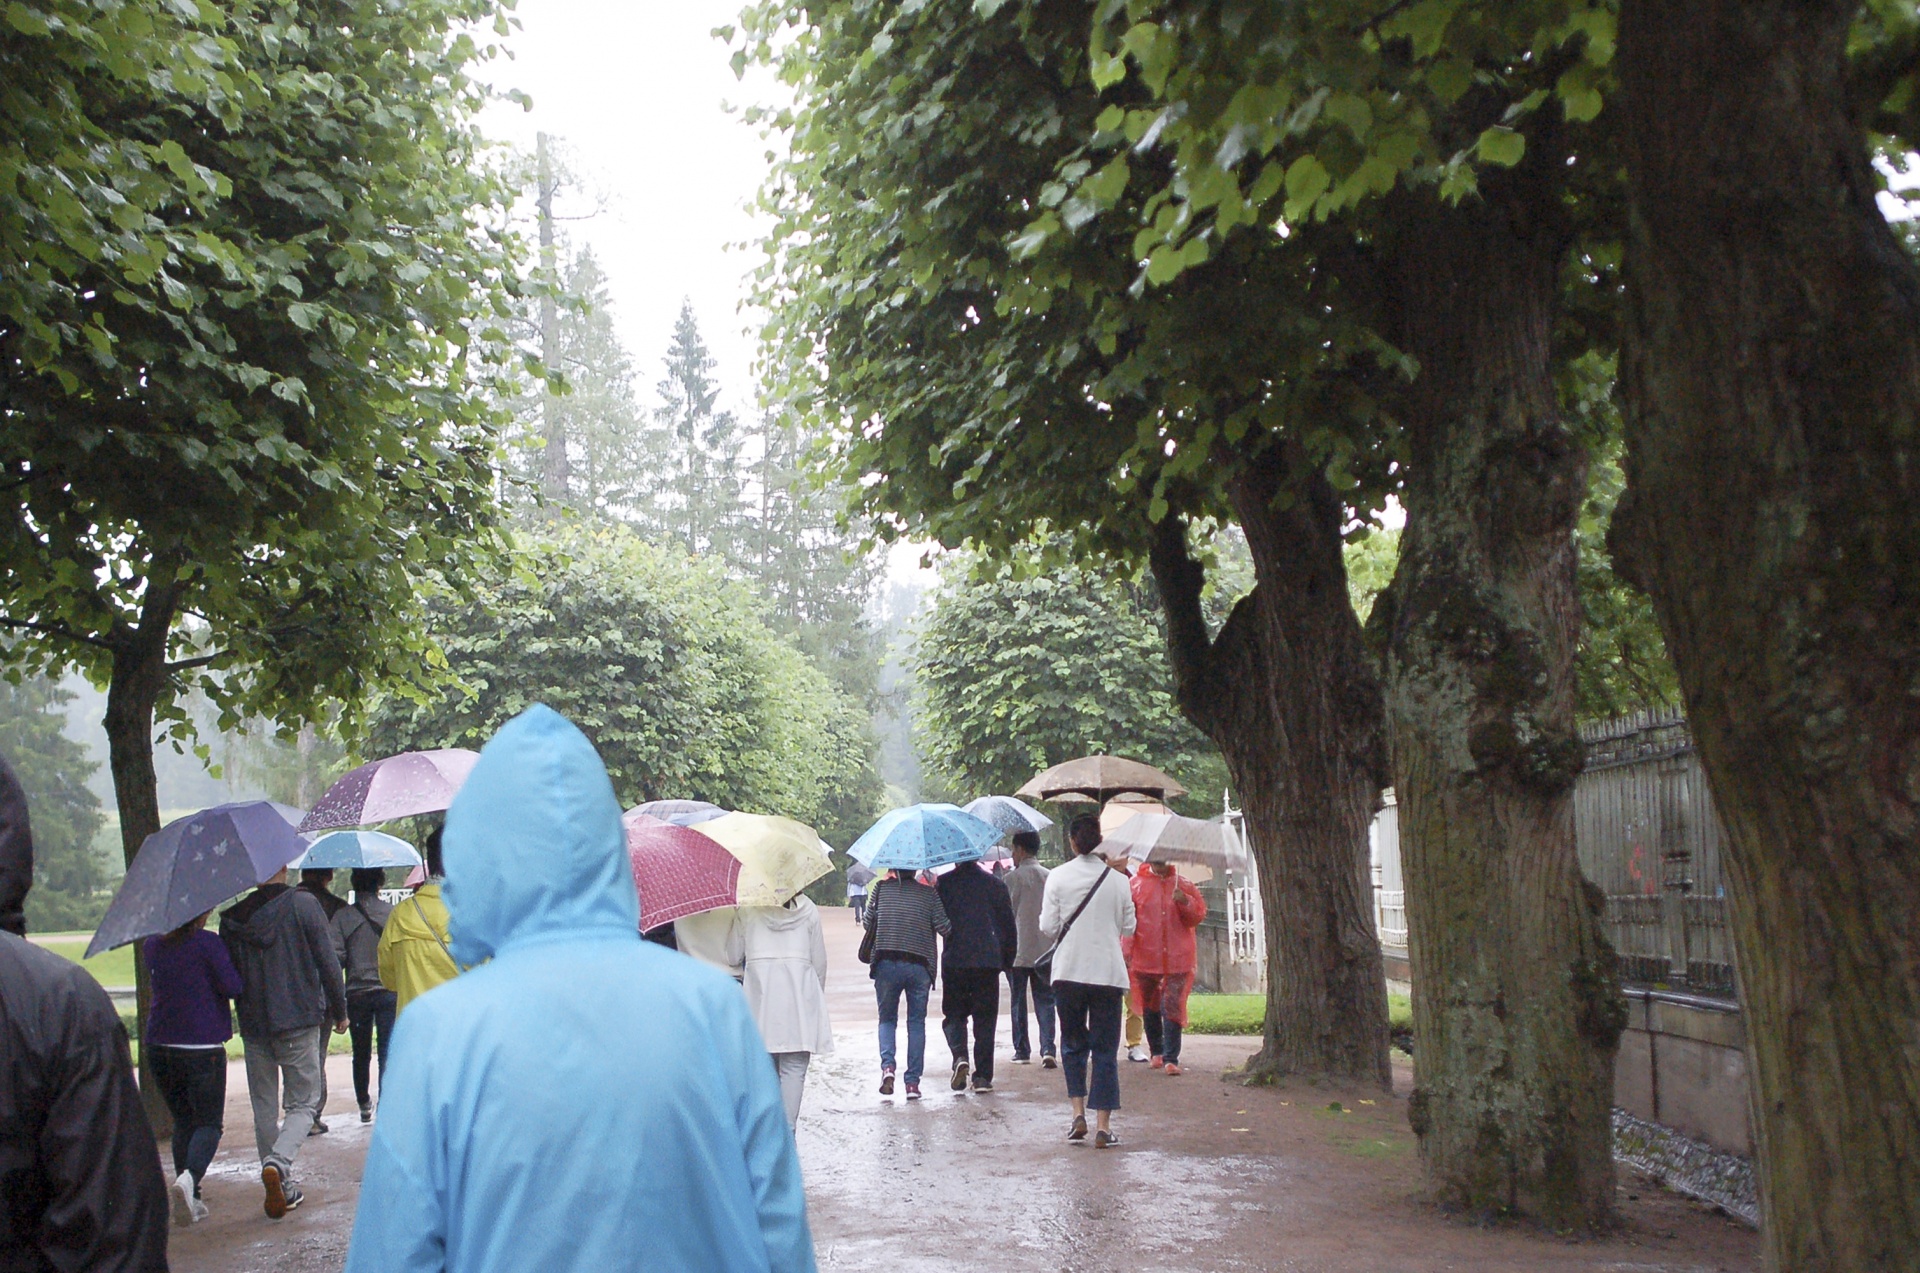 Toeristen met paraplu's in de regen